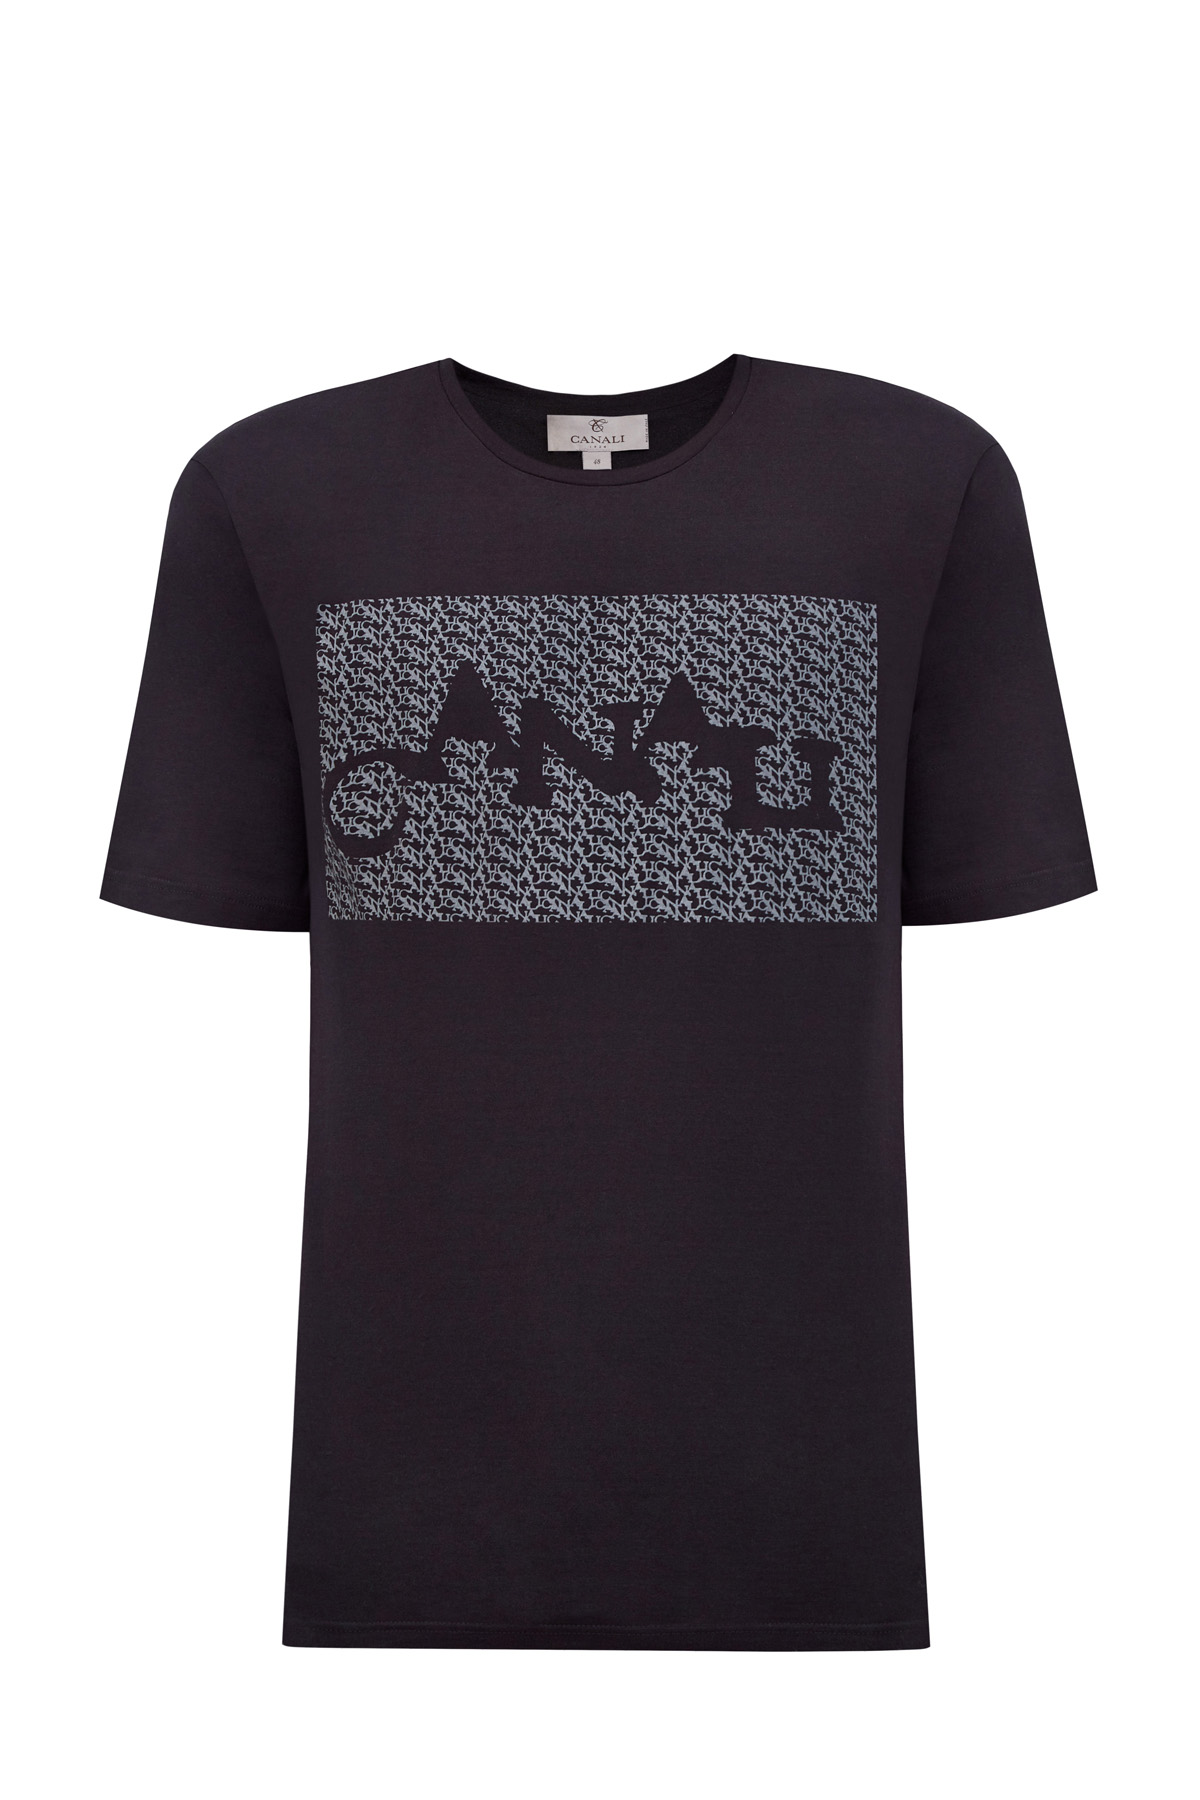 Хлопковая футболка Black Edition с принтом в стиле граффити CANALI, цвет черный, размер 46;50;48 - фото 1